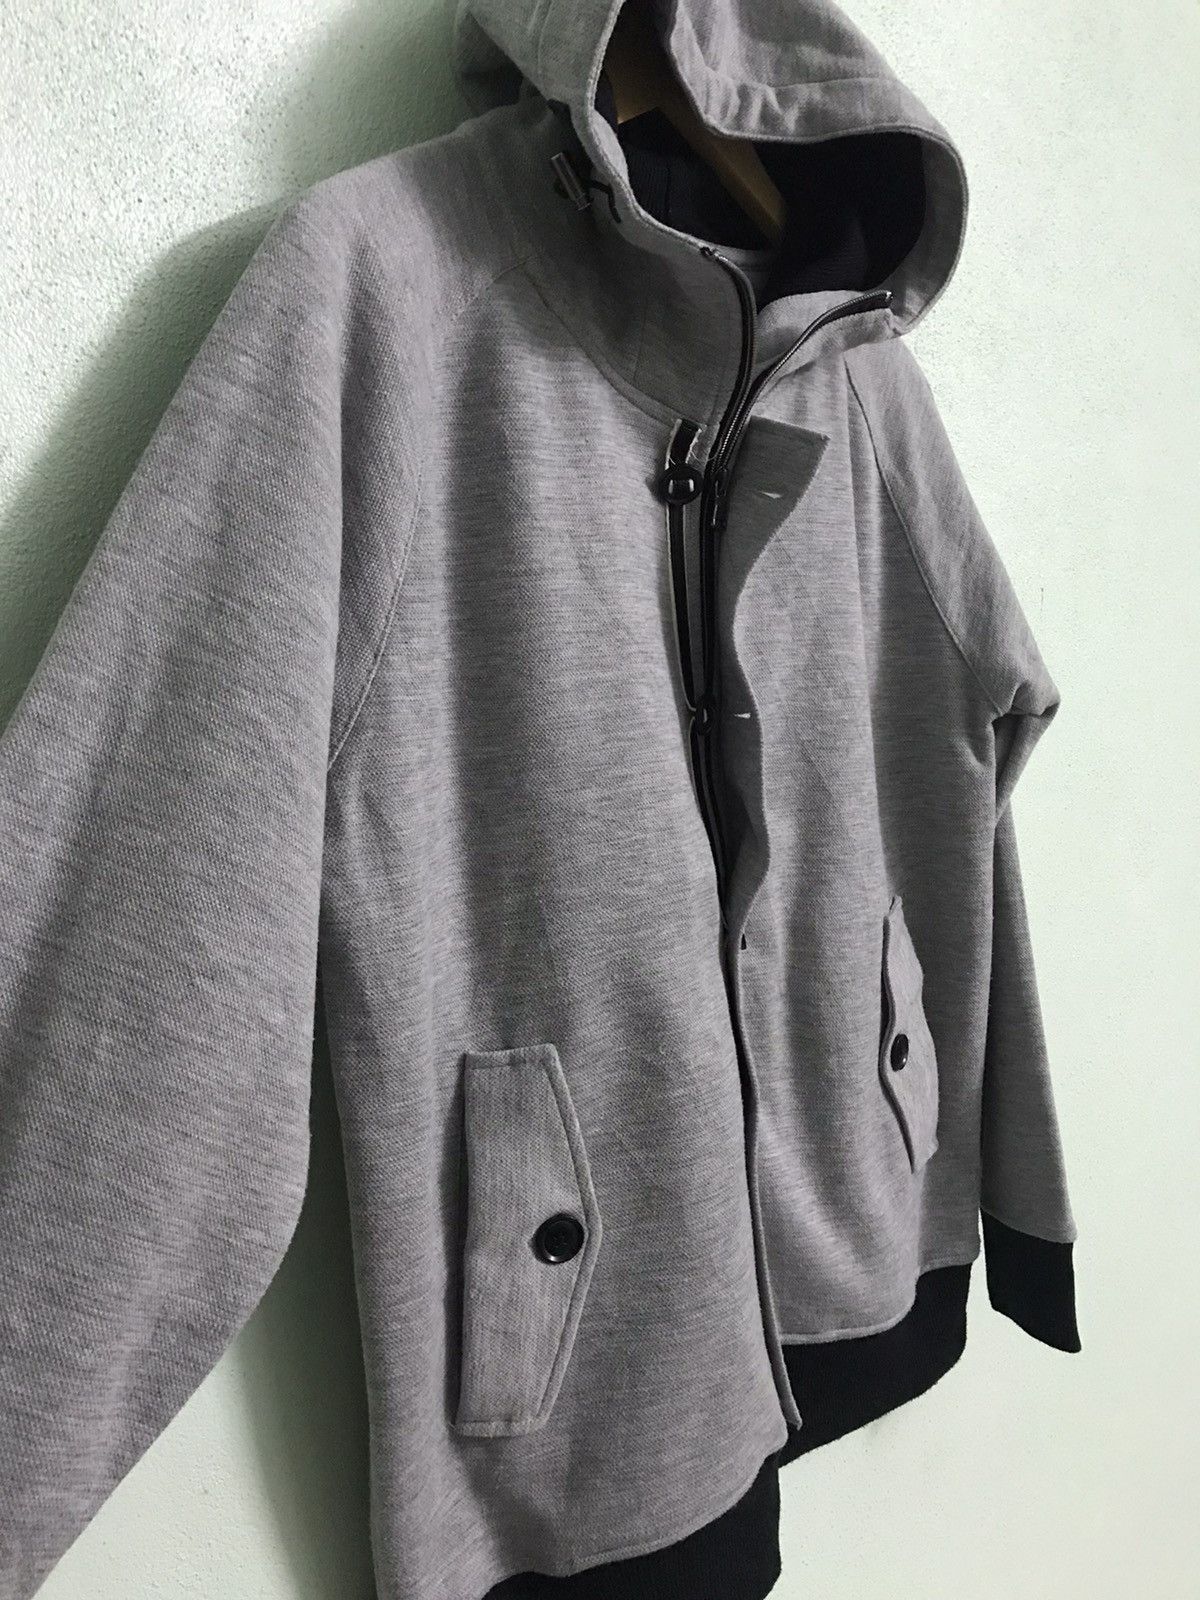 Plus One Clothing - Plus one hoodie jacket - gh0220 - 3